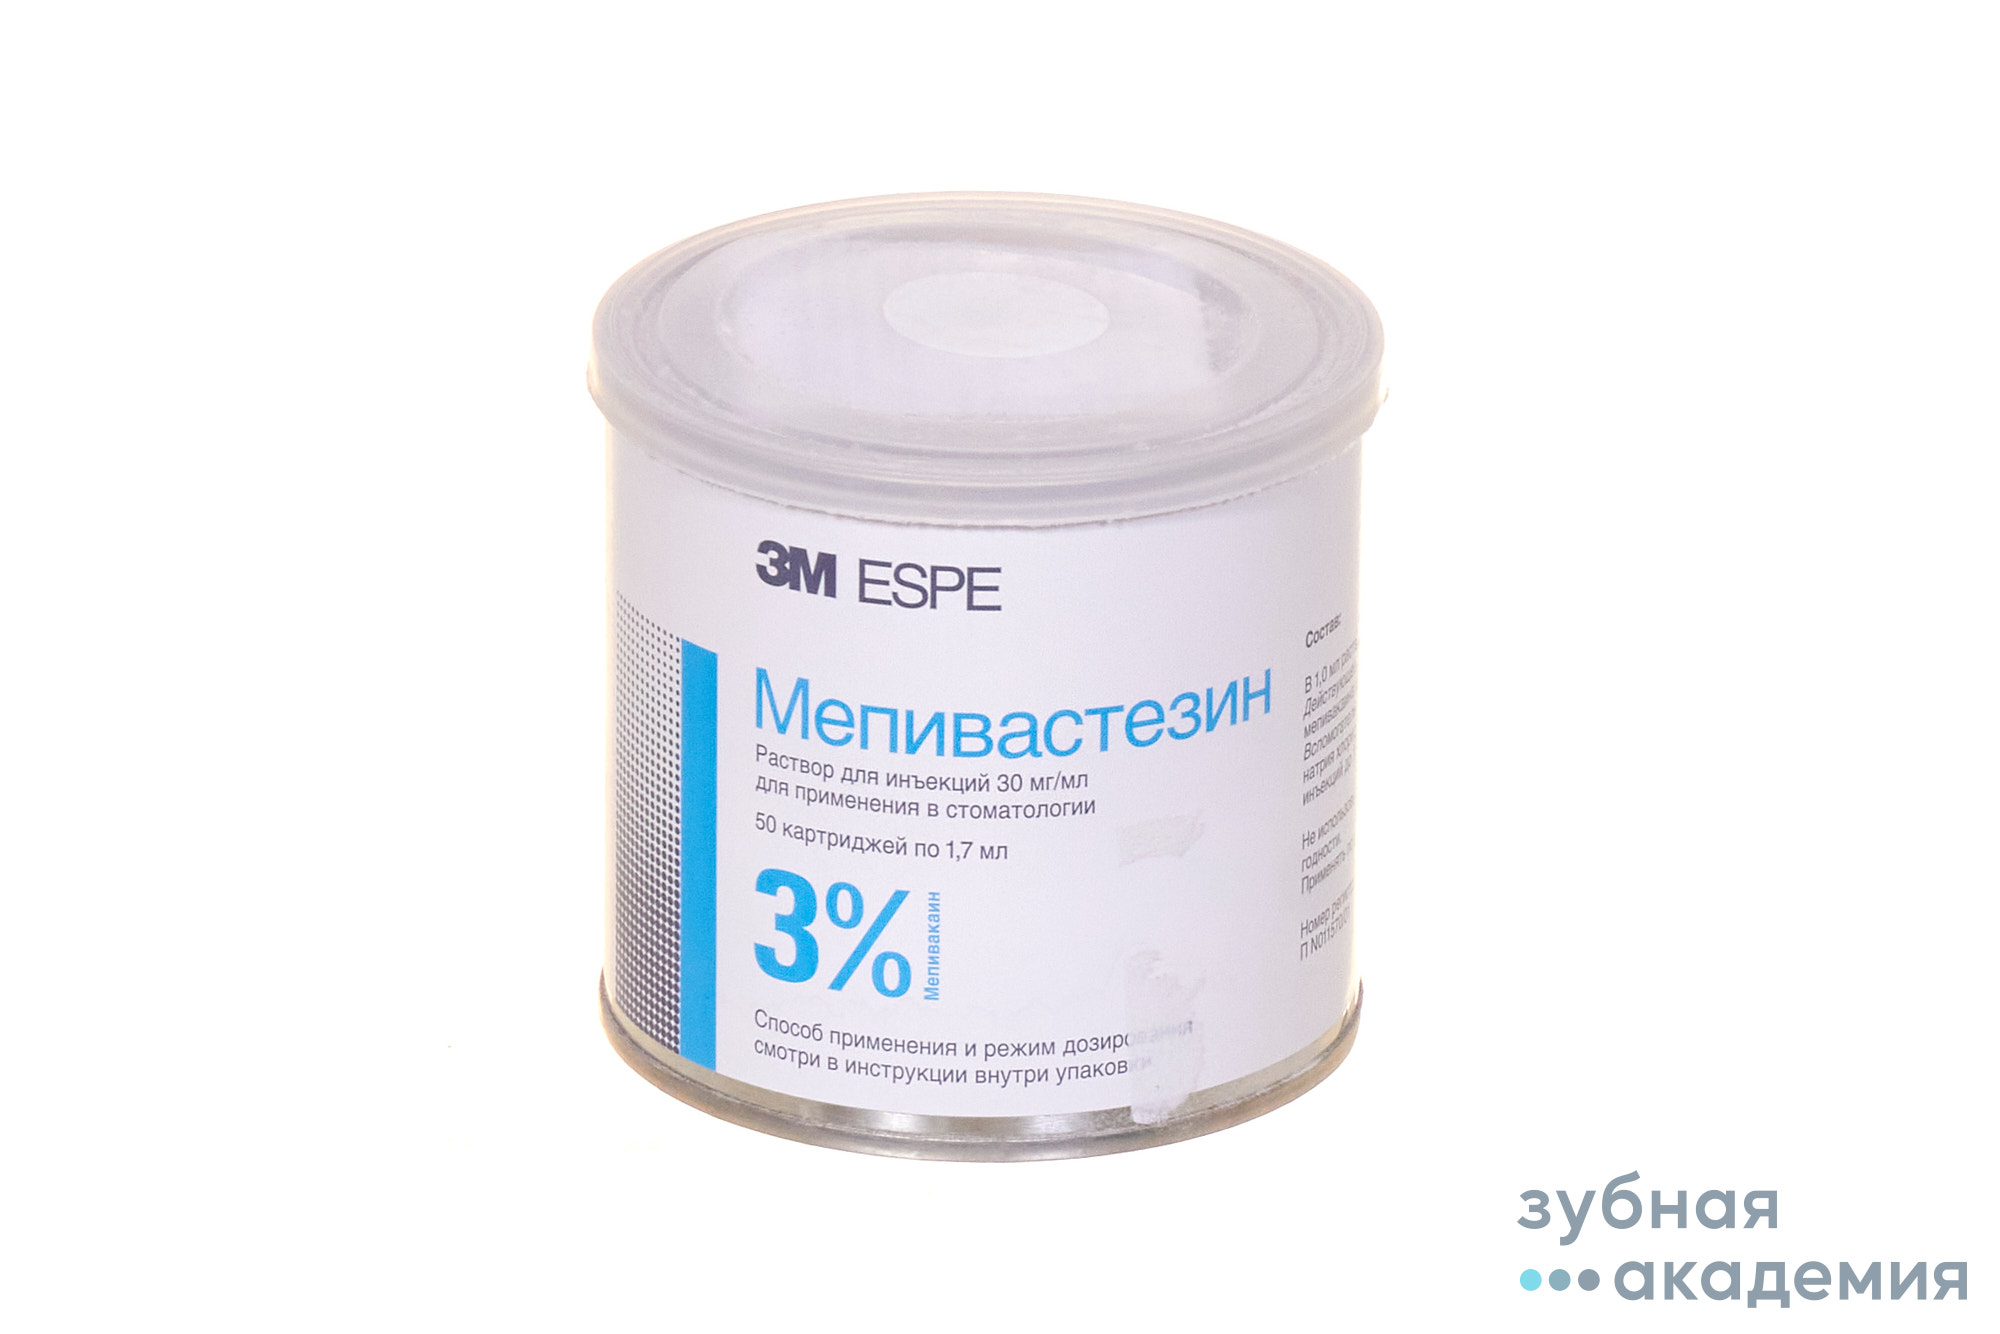 Мепивастезин (Мепивакаин) 50 х 1,7 мл./3M ESPE/ Германия